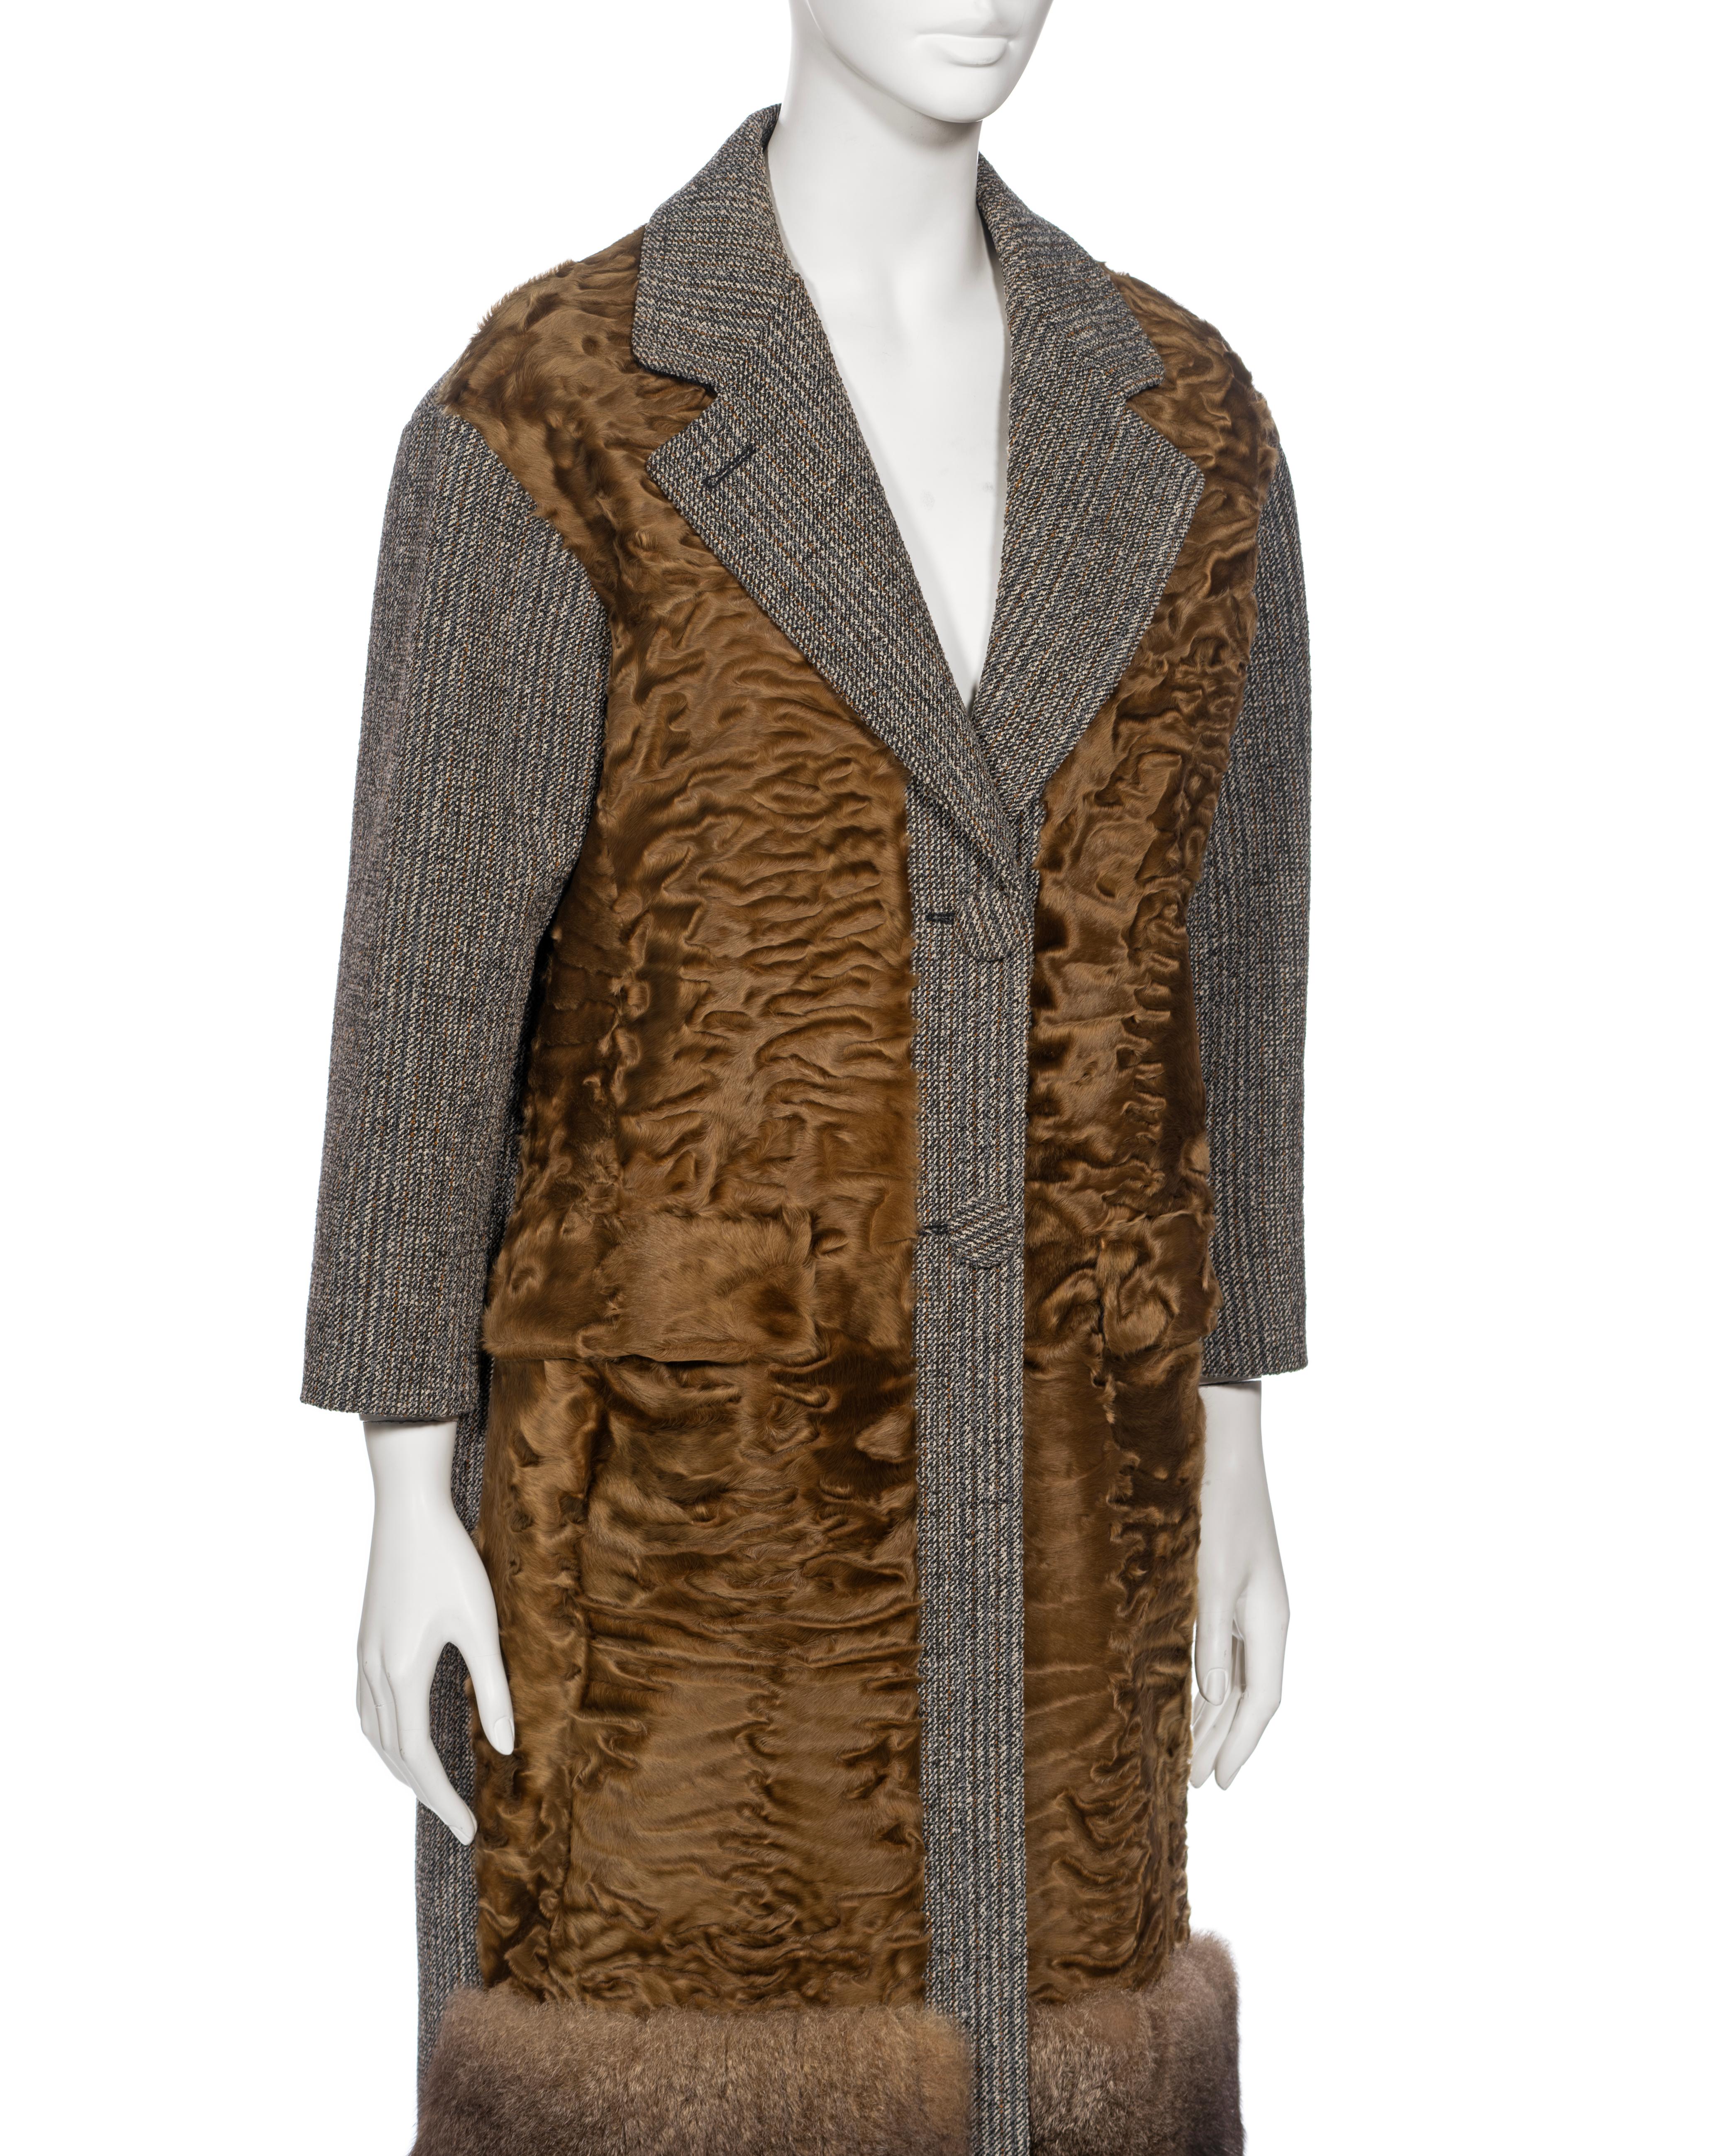 Prada by Miuccia Prada Grey and Brown Wool, Lamb and Possum Fur Coat, FW 2016 For Sale 3